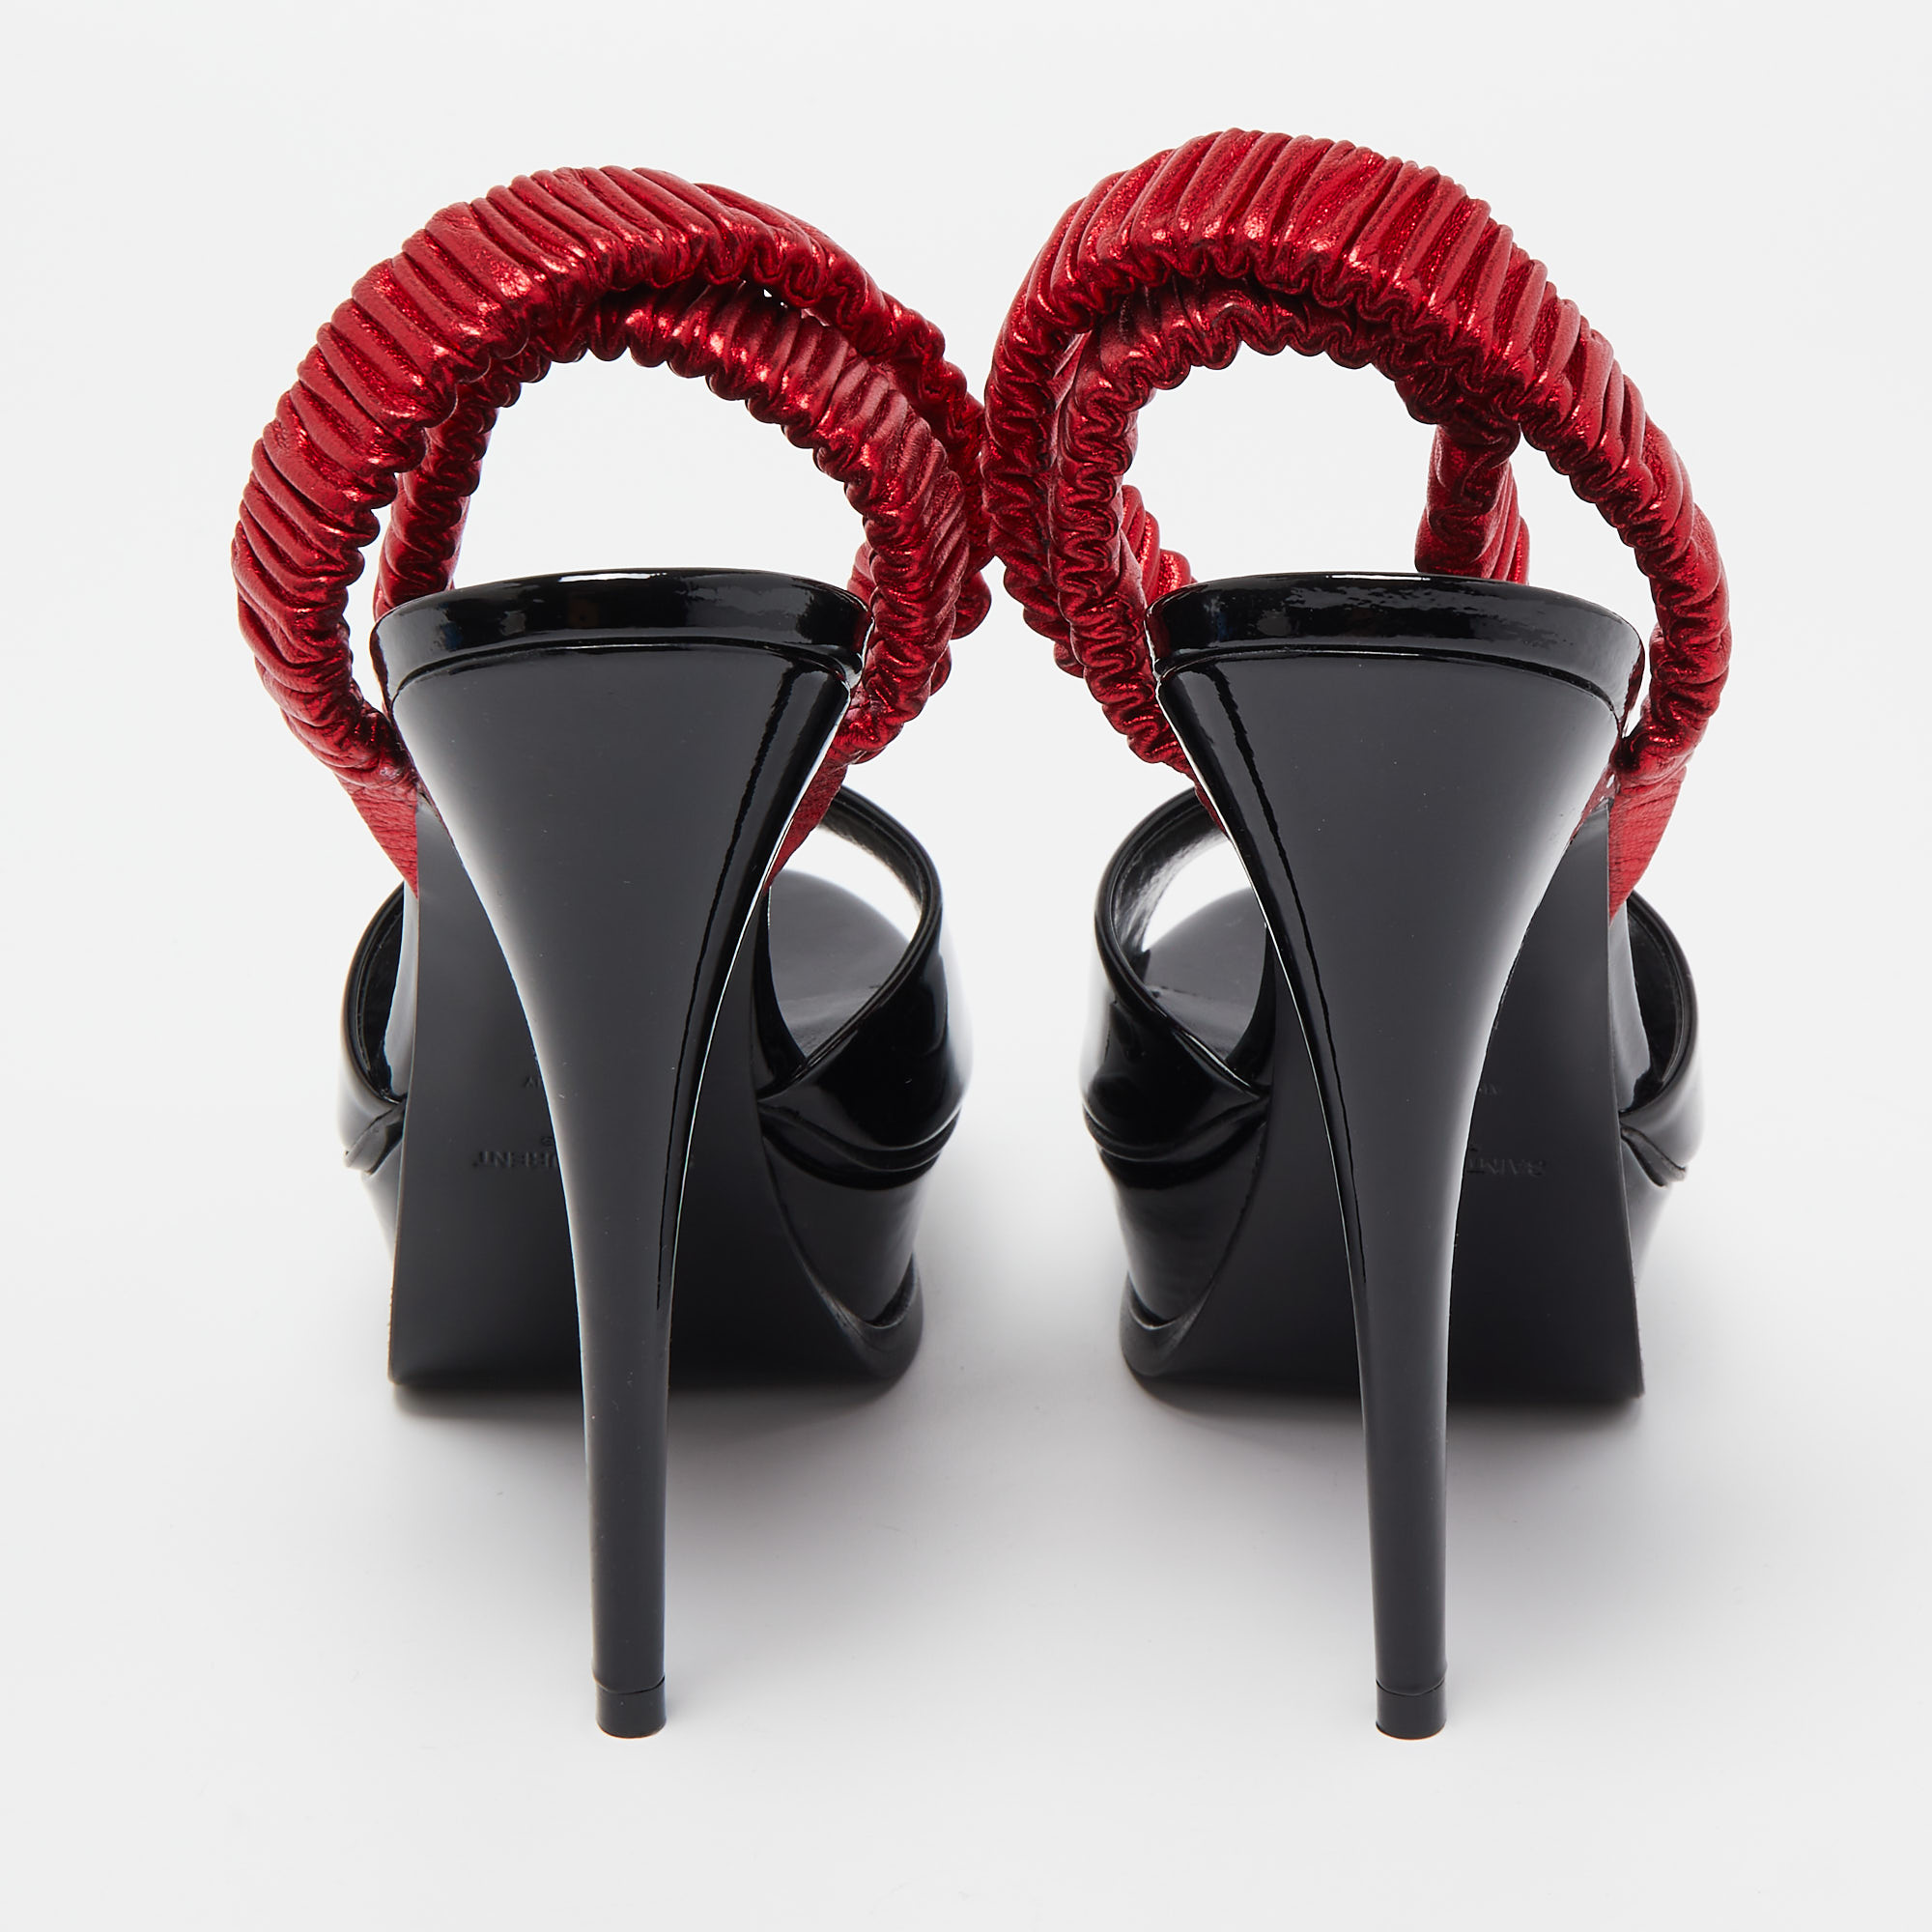 Saint Laurent Black Patent Leather Platform Ankle Wrap Sandals Size 36.5